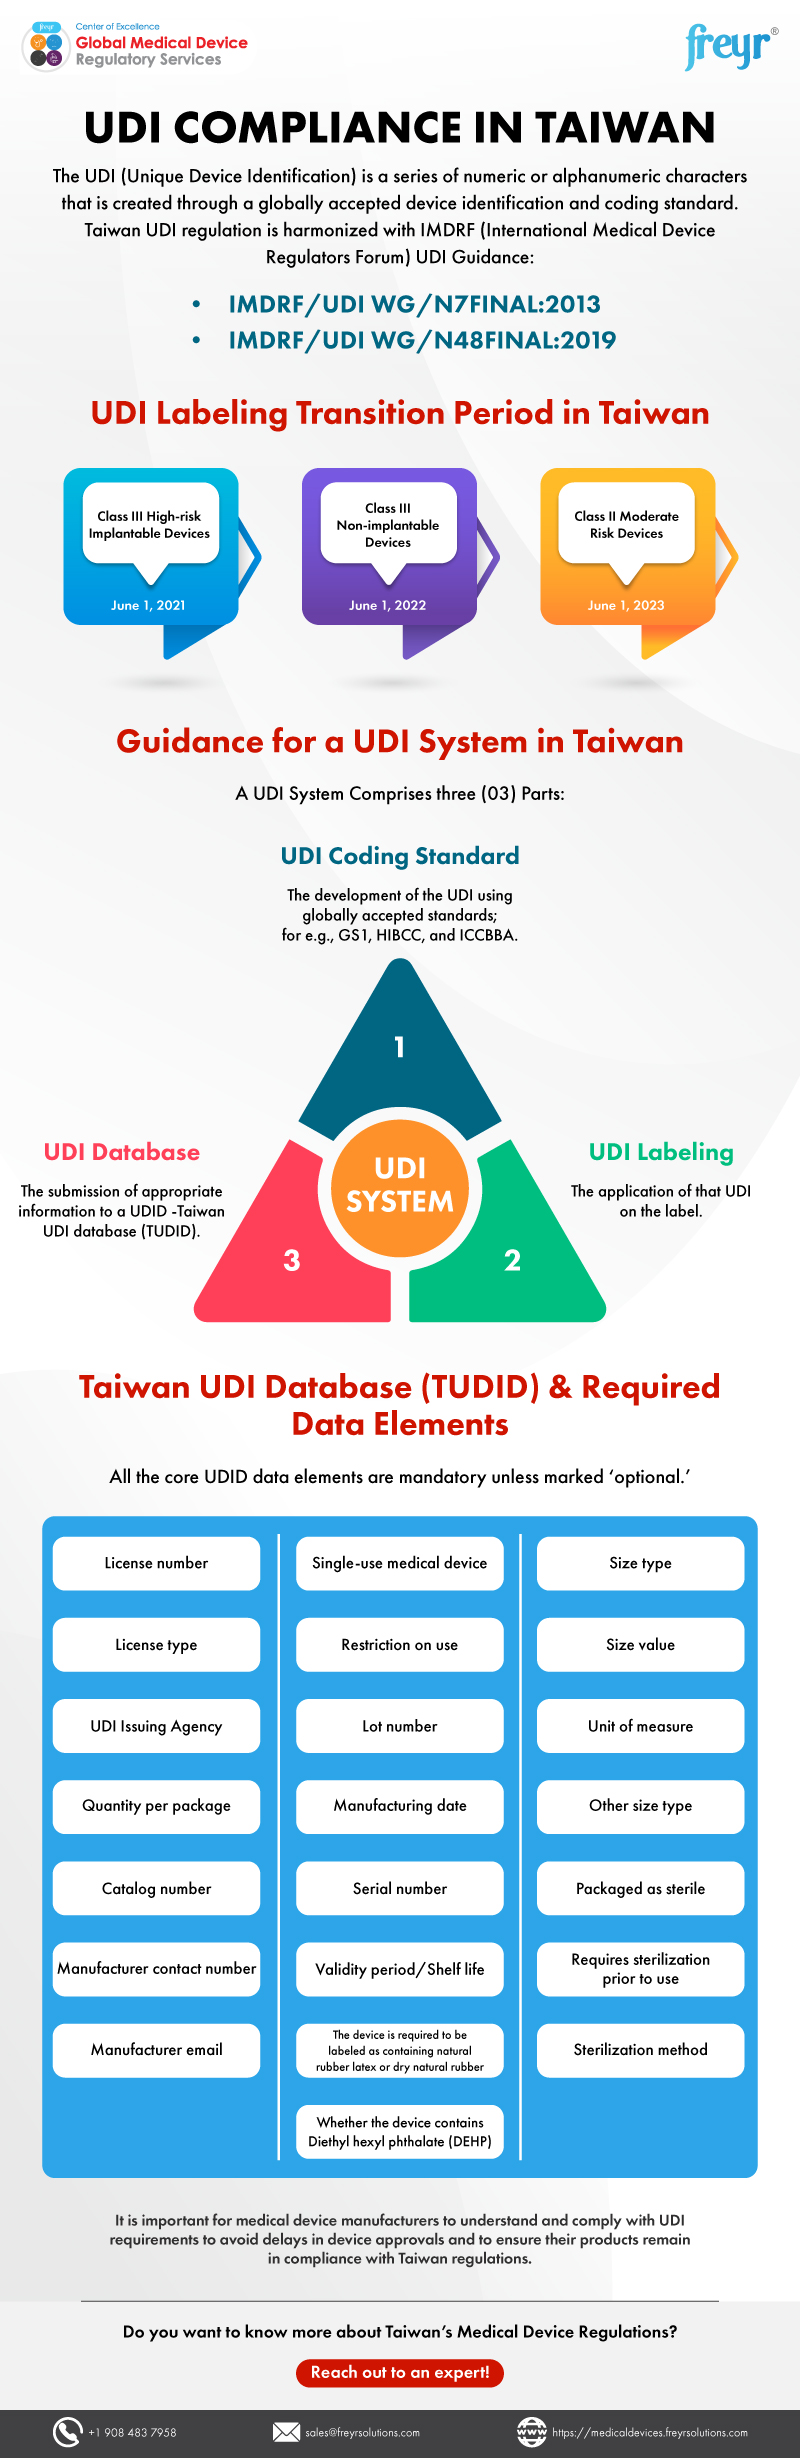 UDI Compliance in Taiwan